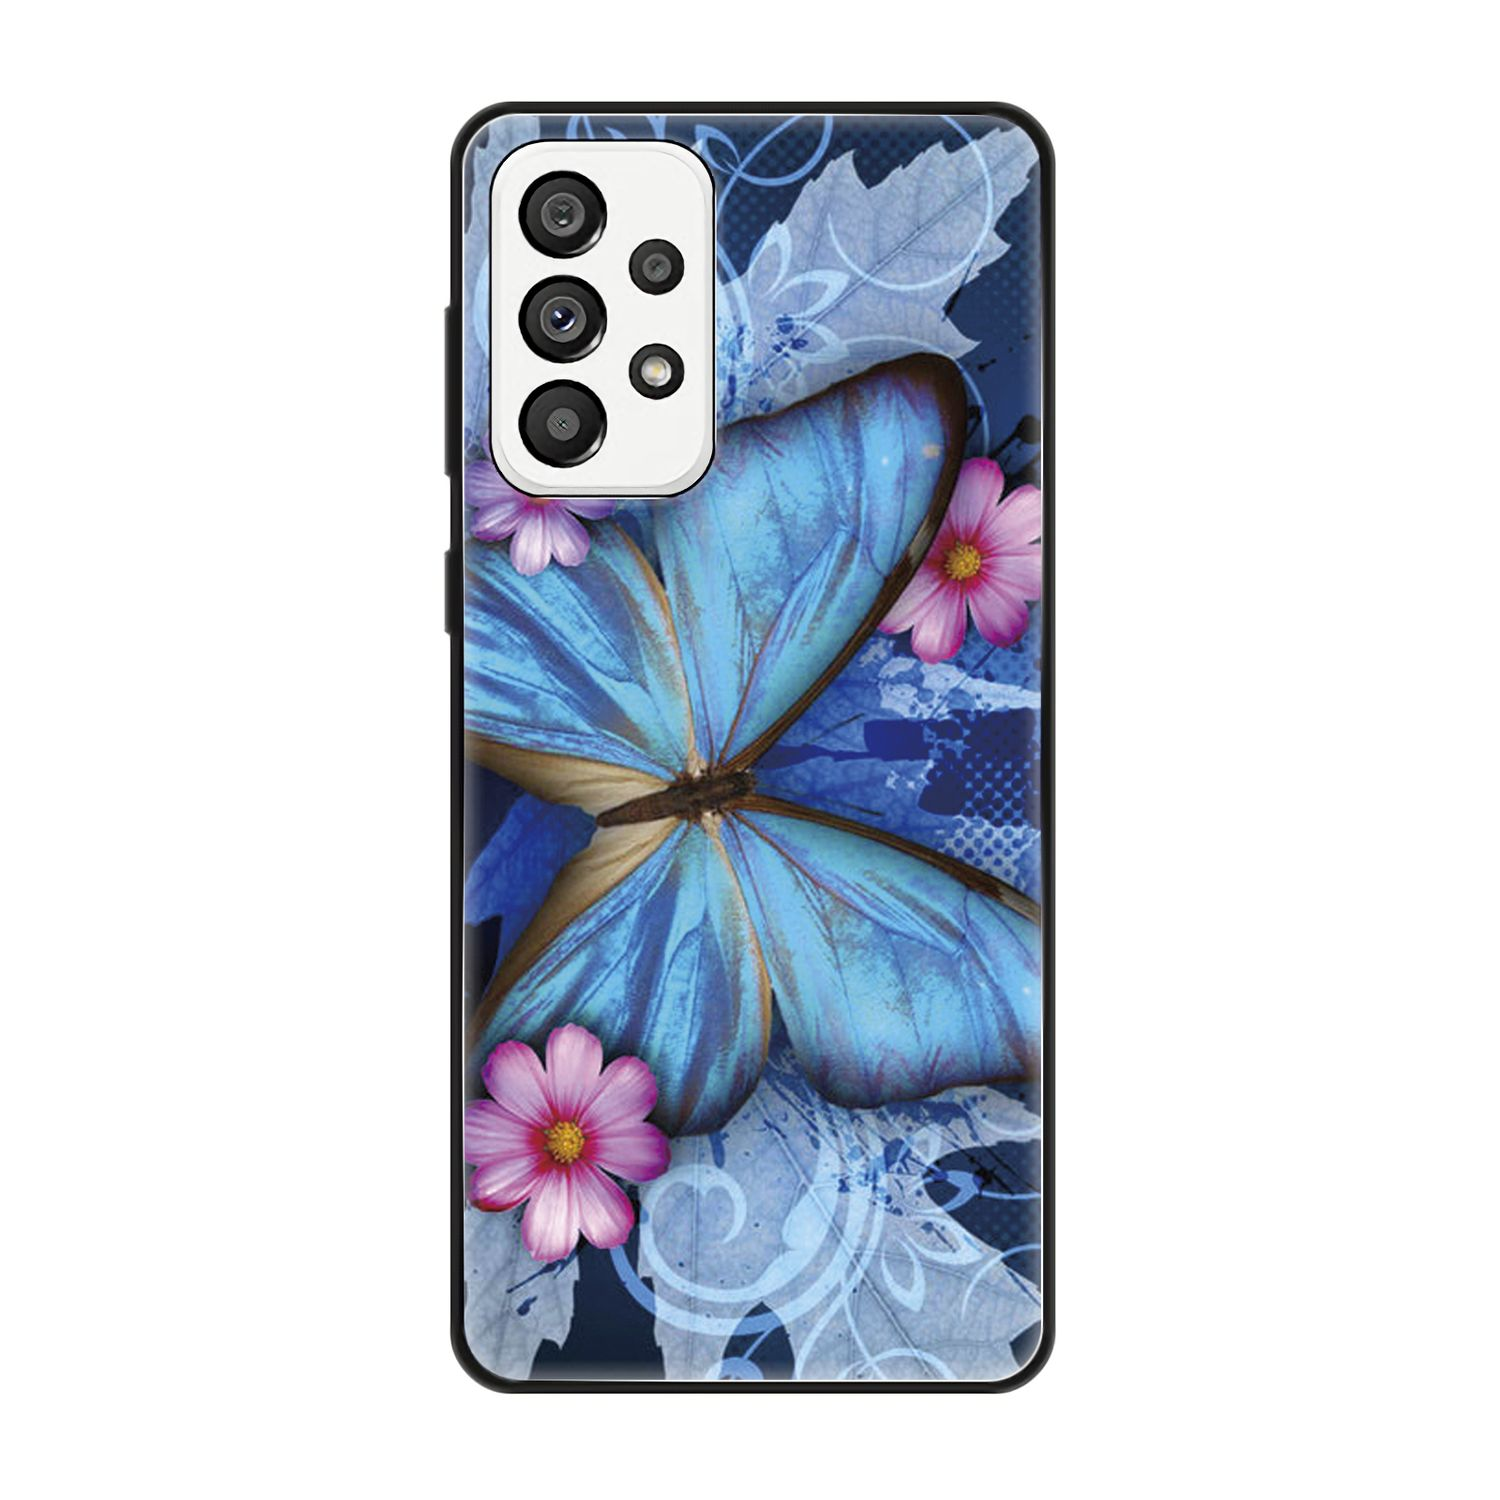 DESIGN 5G, Blau Schmetterling Samsung, Case, Galaxy A73 Backcover, KÖNIG